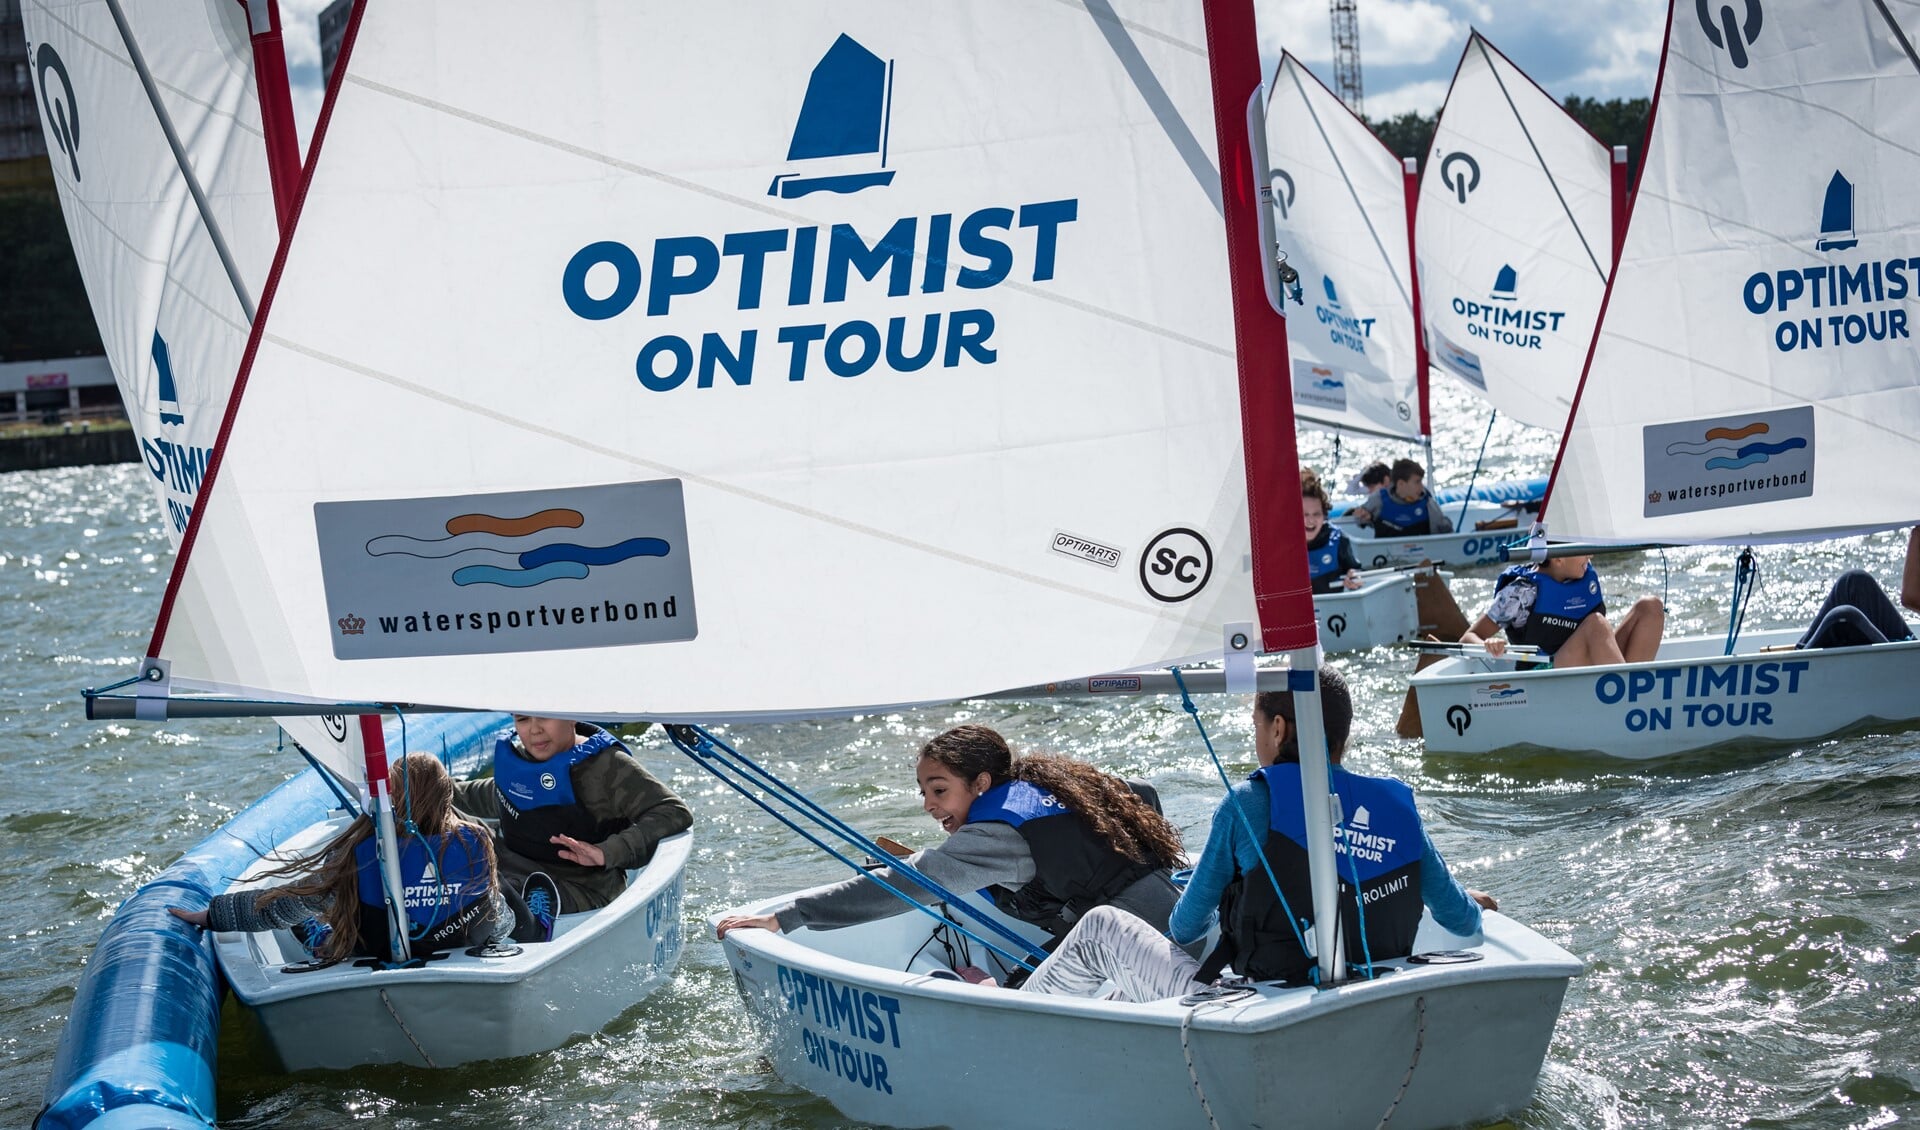 Ook de watersporten presenteren zich weer en jeugd kan leren zeilen bij Optimist on Tour.